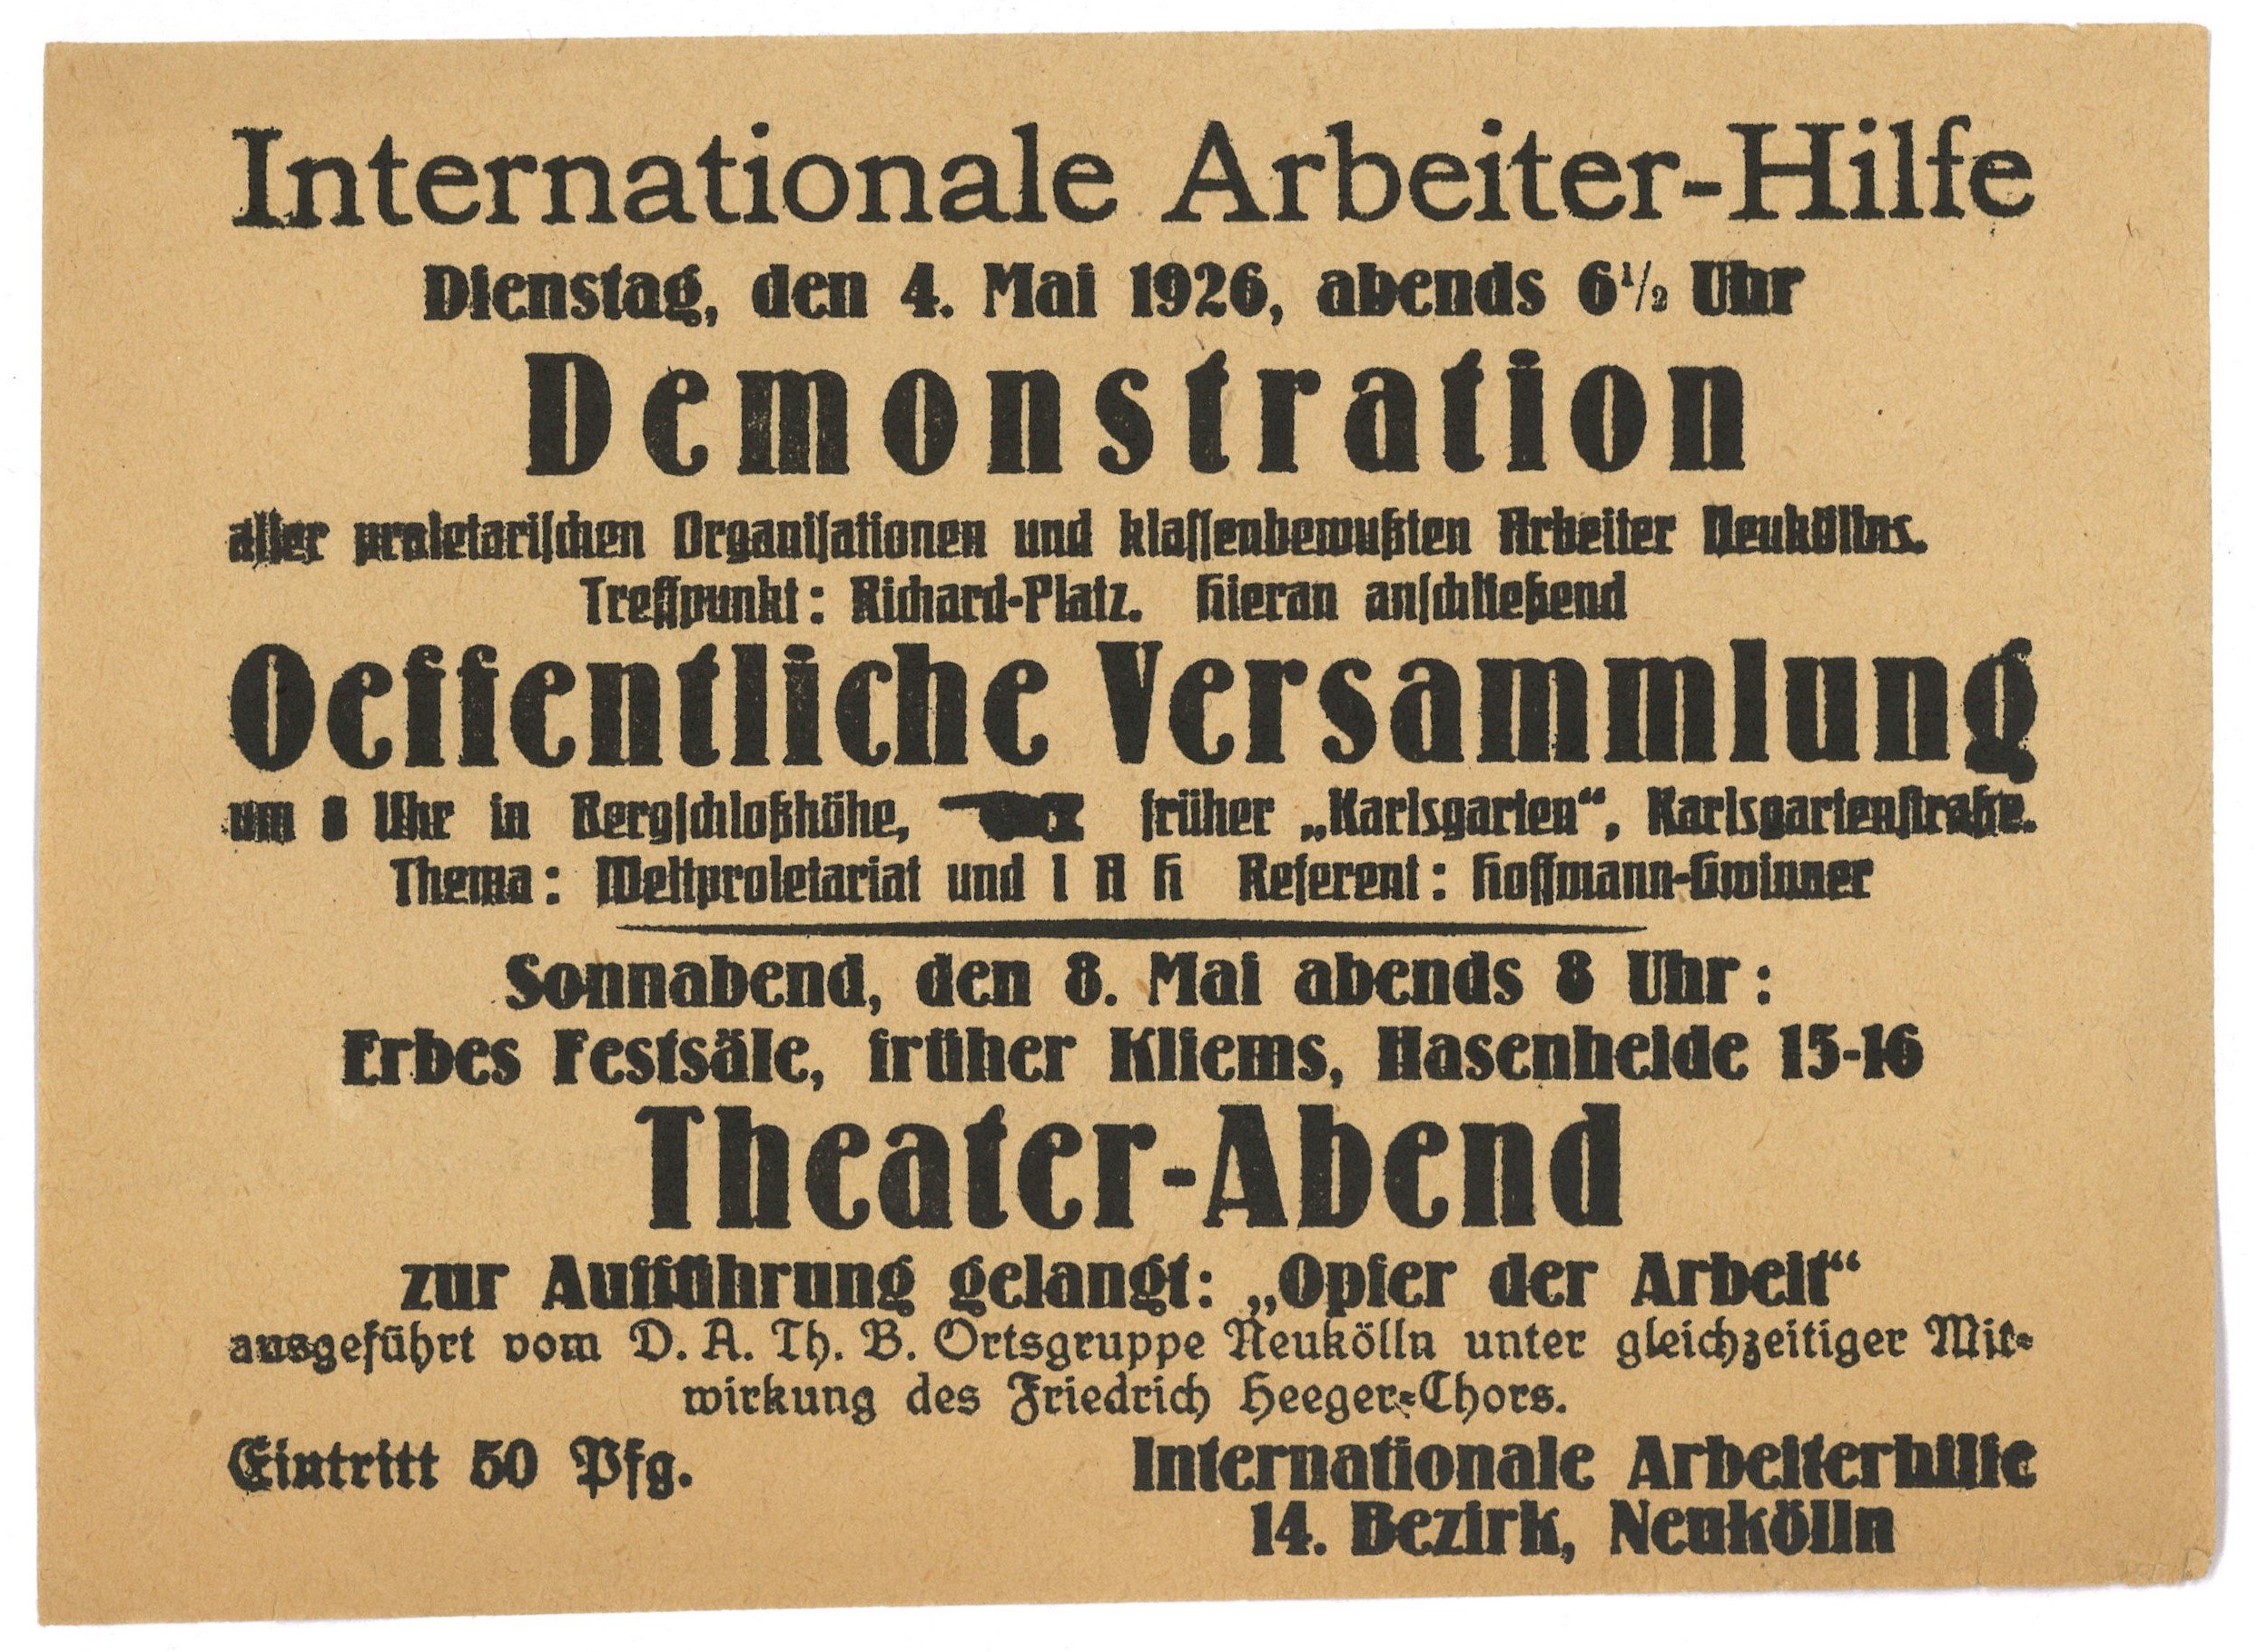 Handzettel mit Veranstaltungsankündigungen der Internationalen Arbeiterhilfe in Berlin-Neukölln 1926 (Landesgeschichtliche Vereinigung für die Mark Brandenburg e.V., Archiv CC BY)